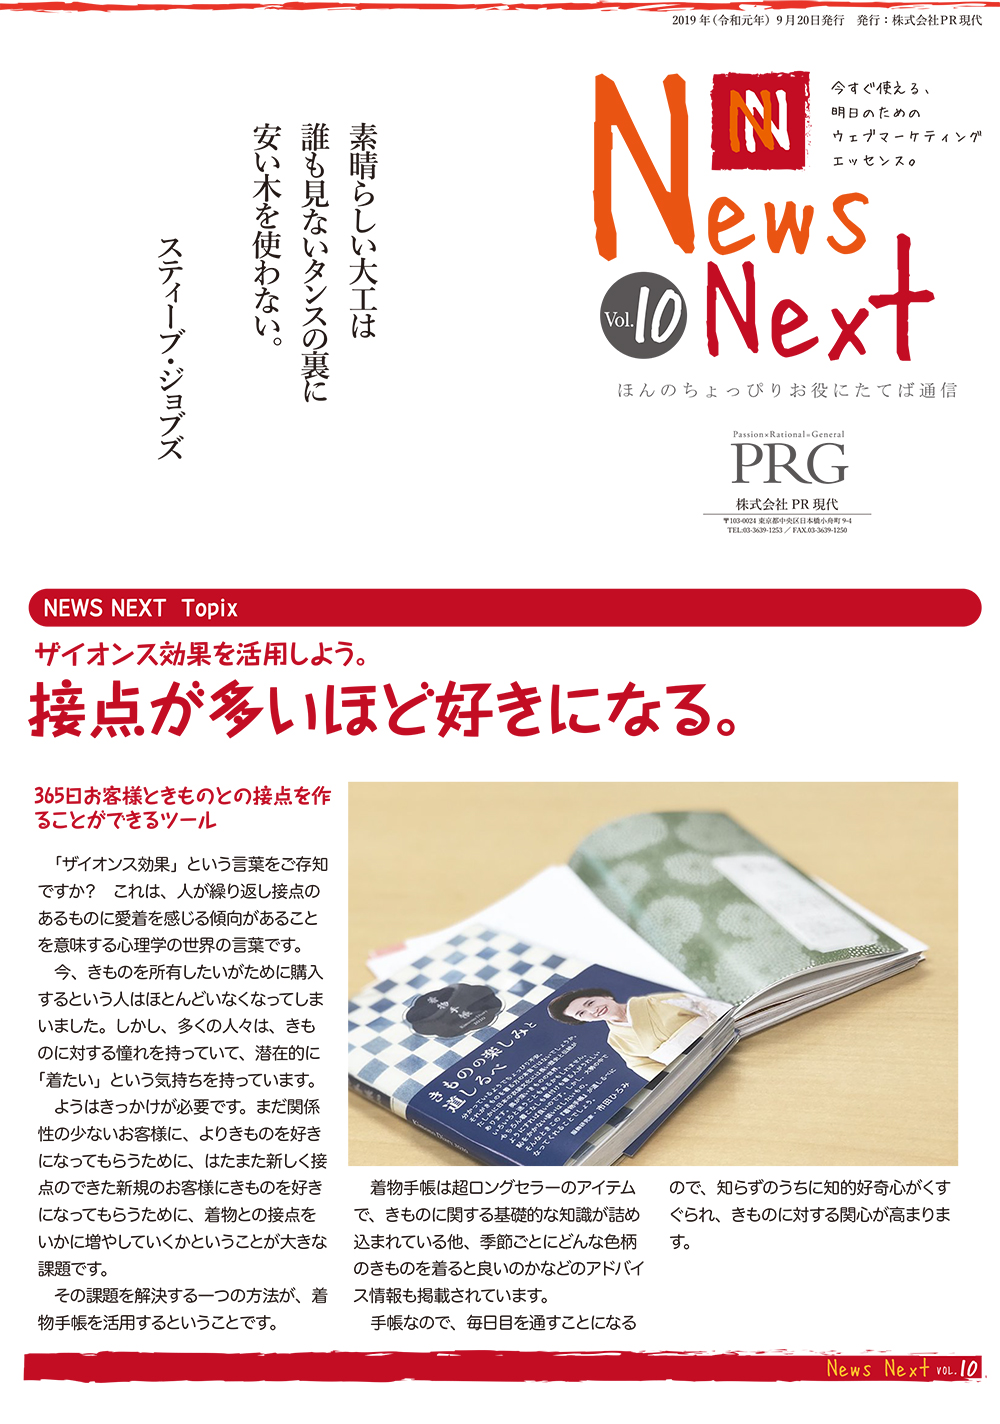 News NEXT vol.10